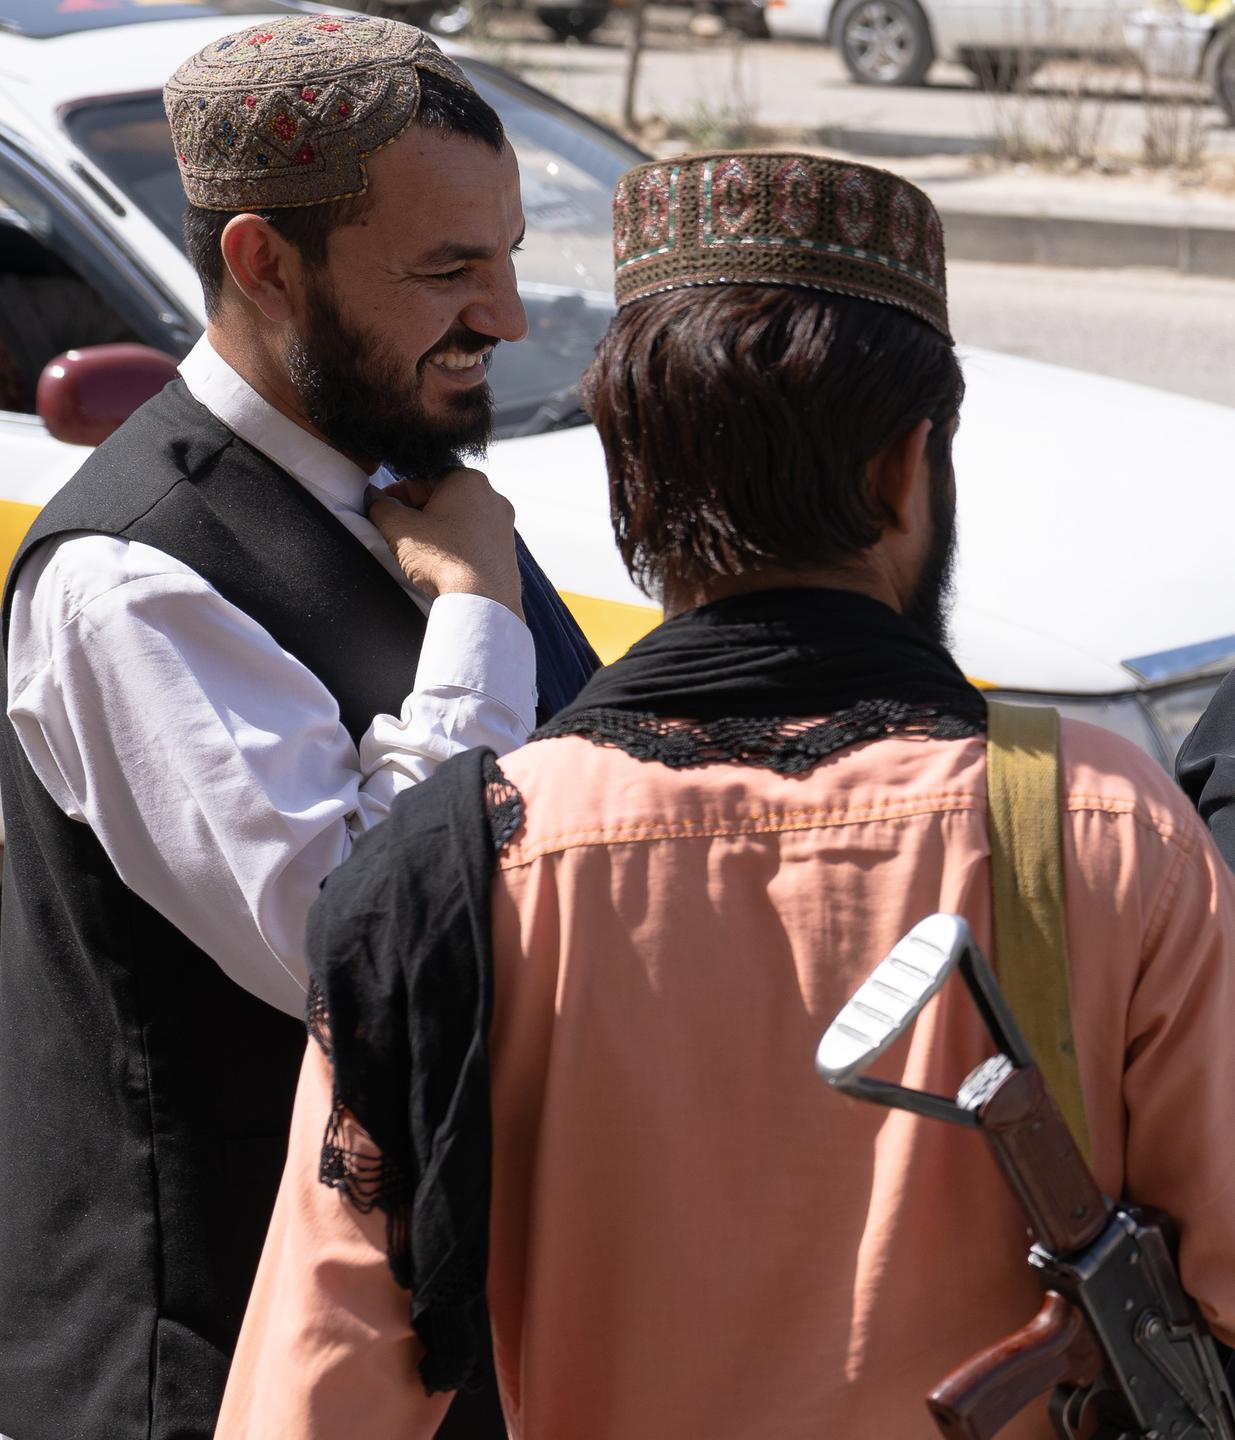 Zwei Männer mit paschtunischer Kappe - einer davon mit Bart, stehen vor einem Auto und unterhalten sich.